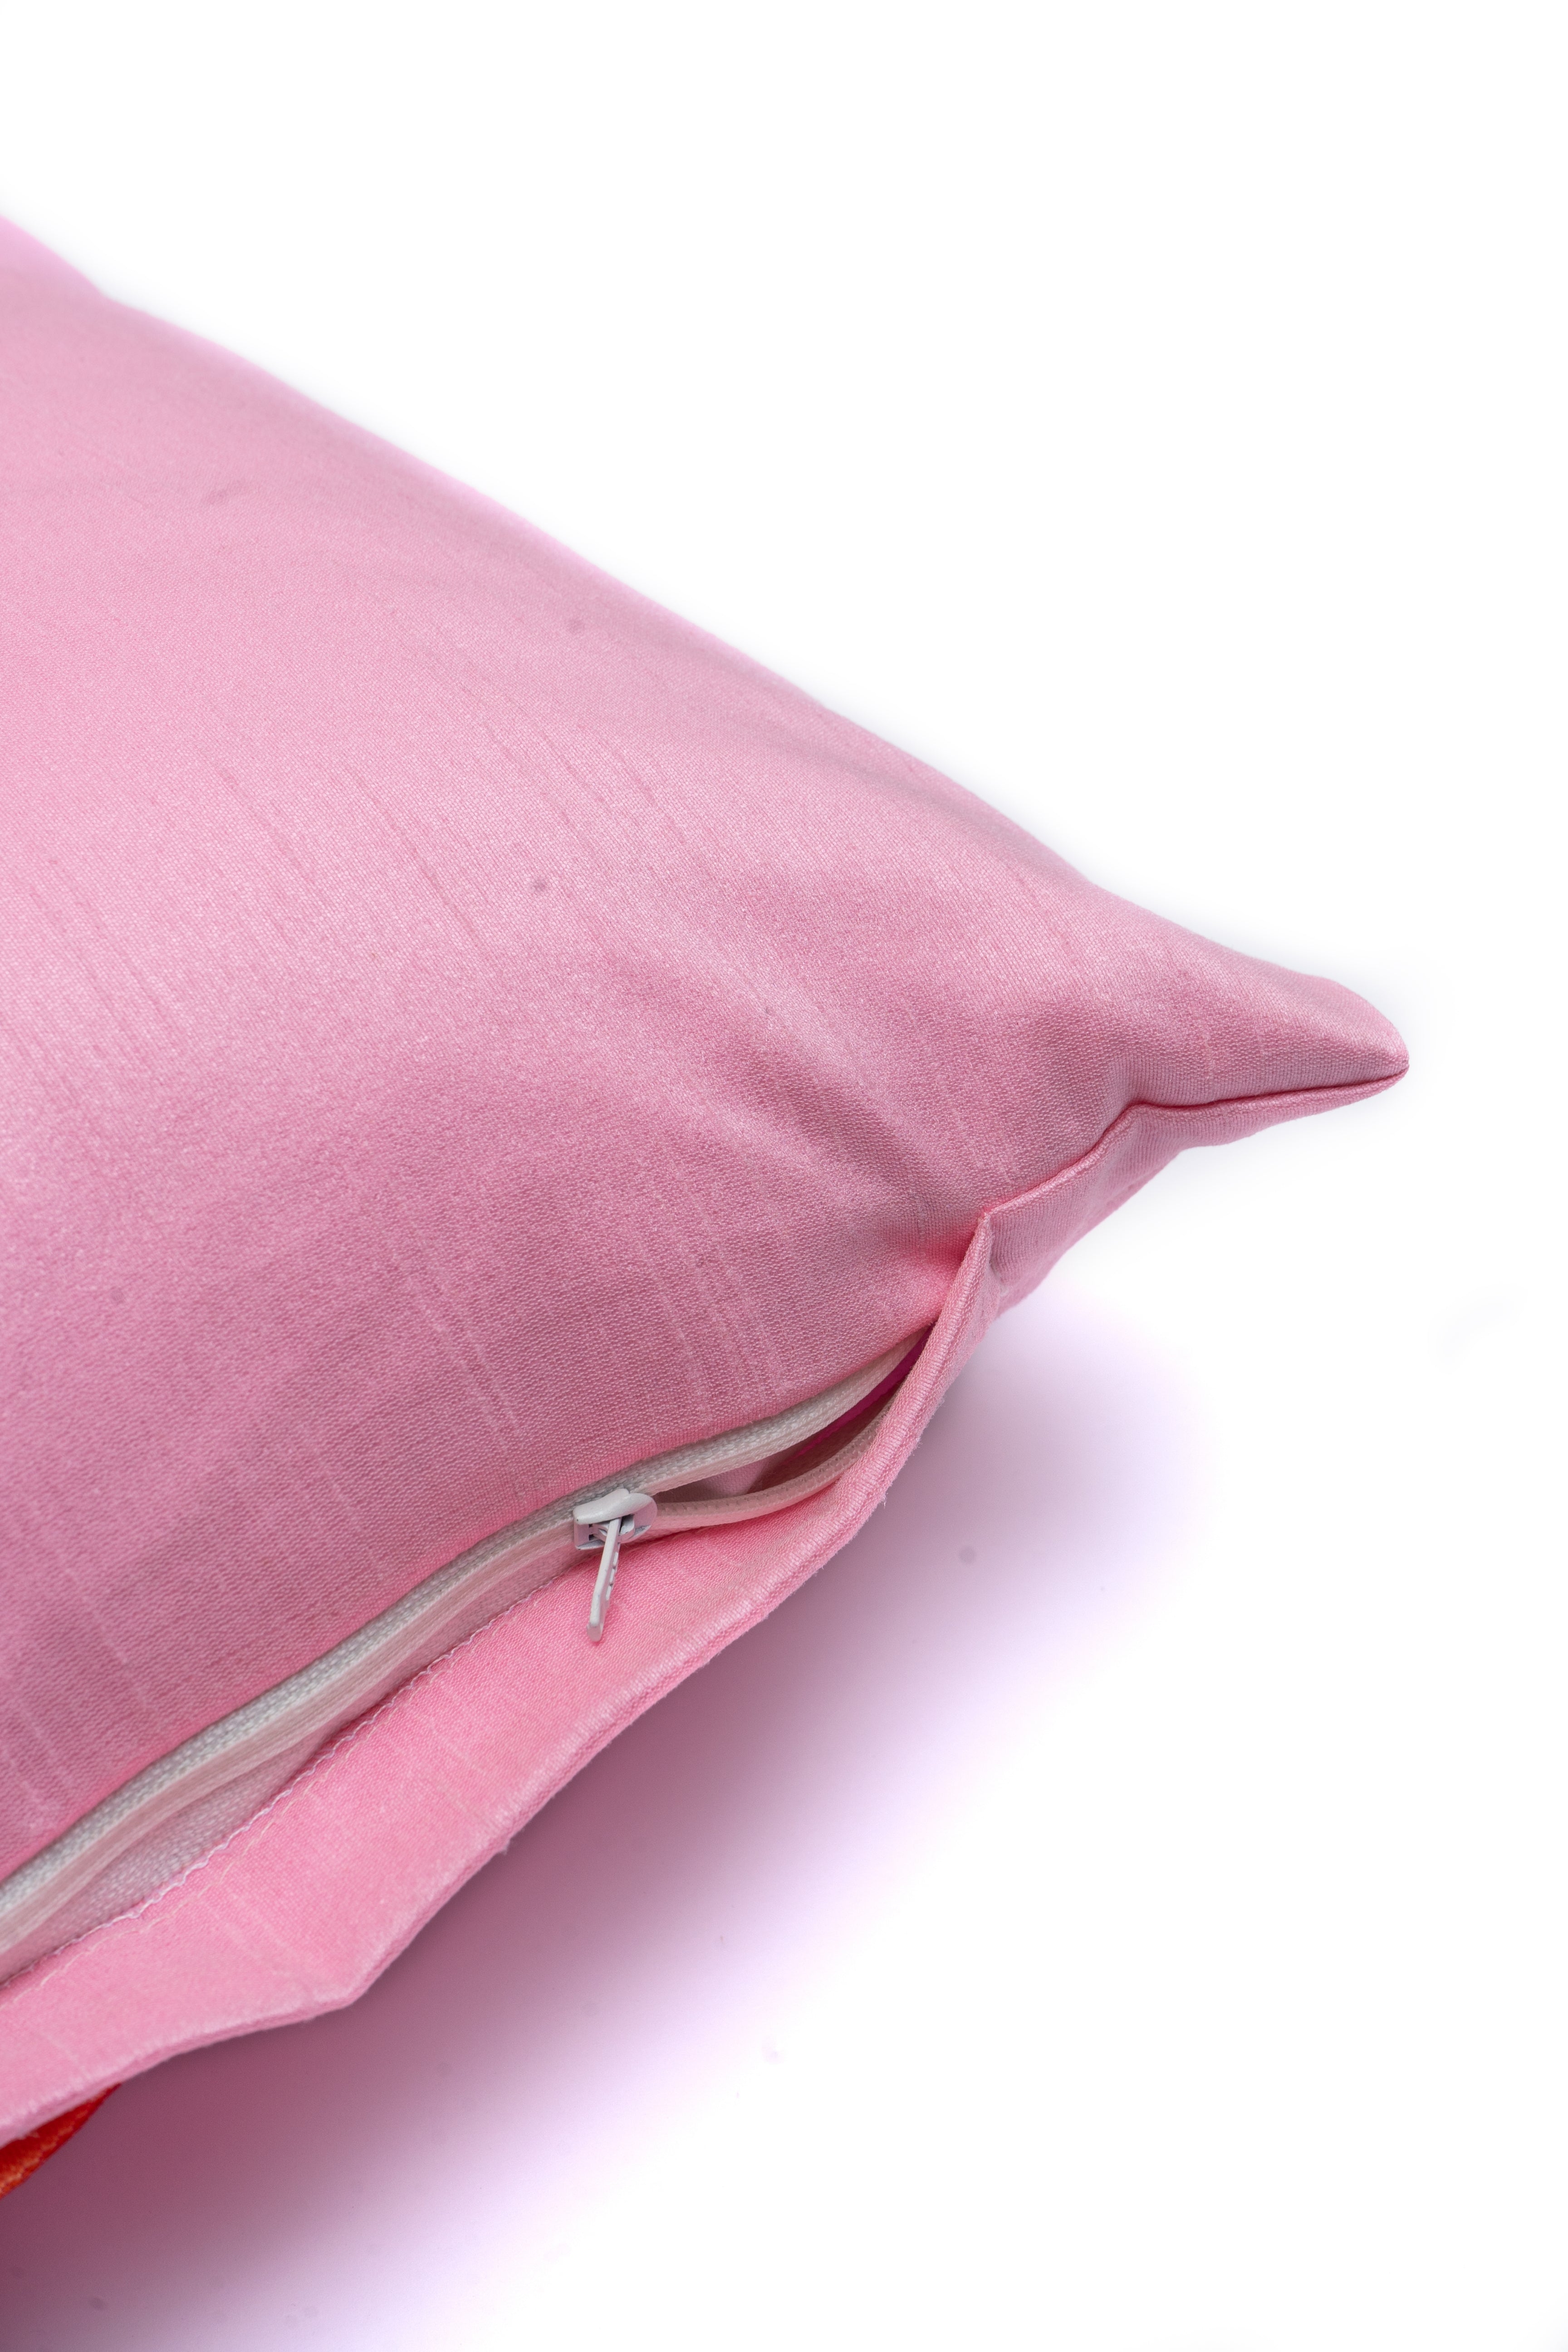 Pink Plain Cushion Cover